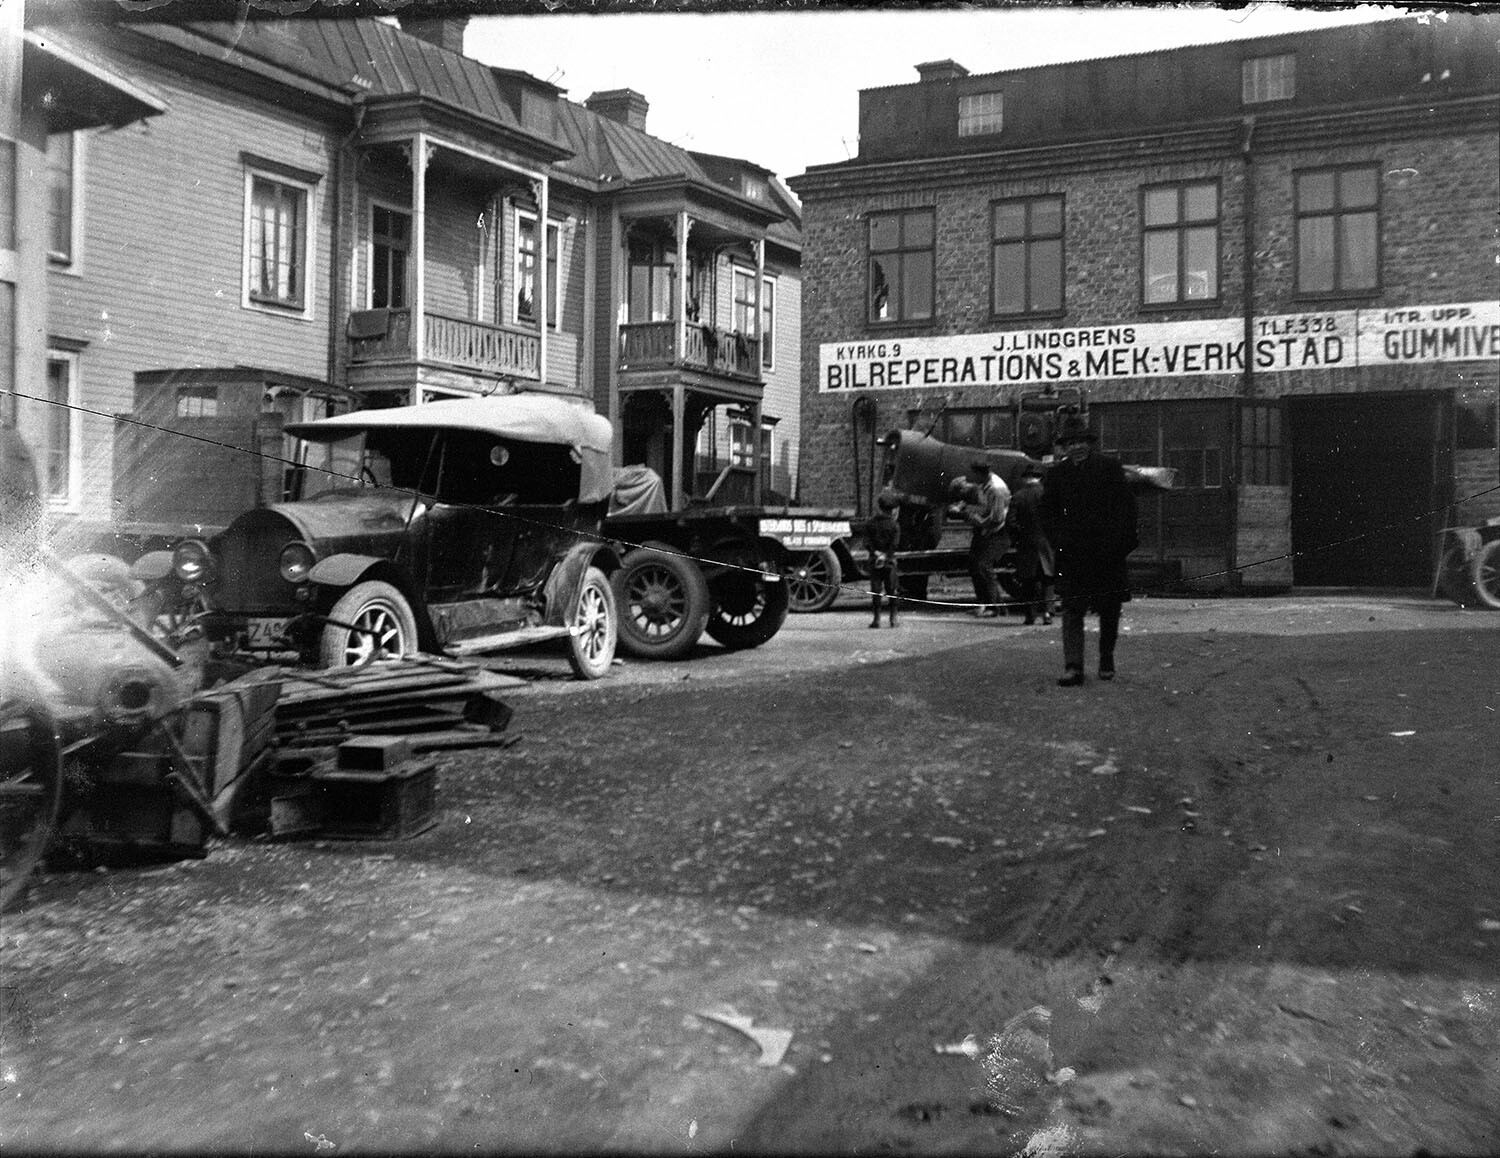 John Lindgrens bilverkstad på Kyrkgatan